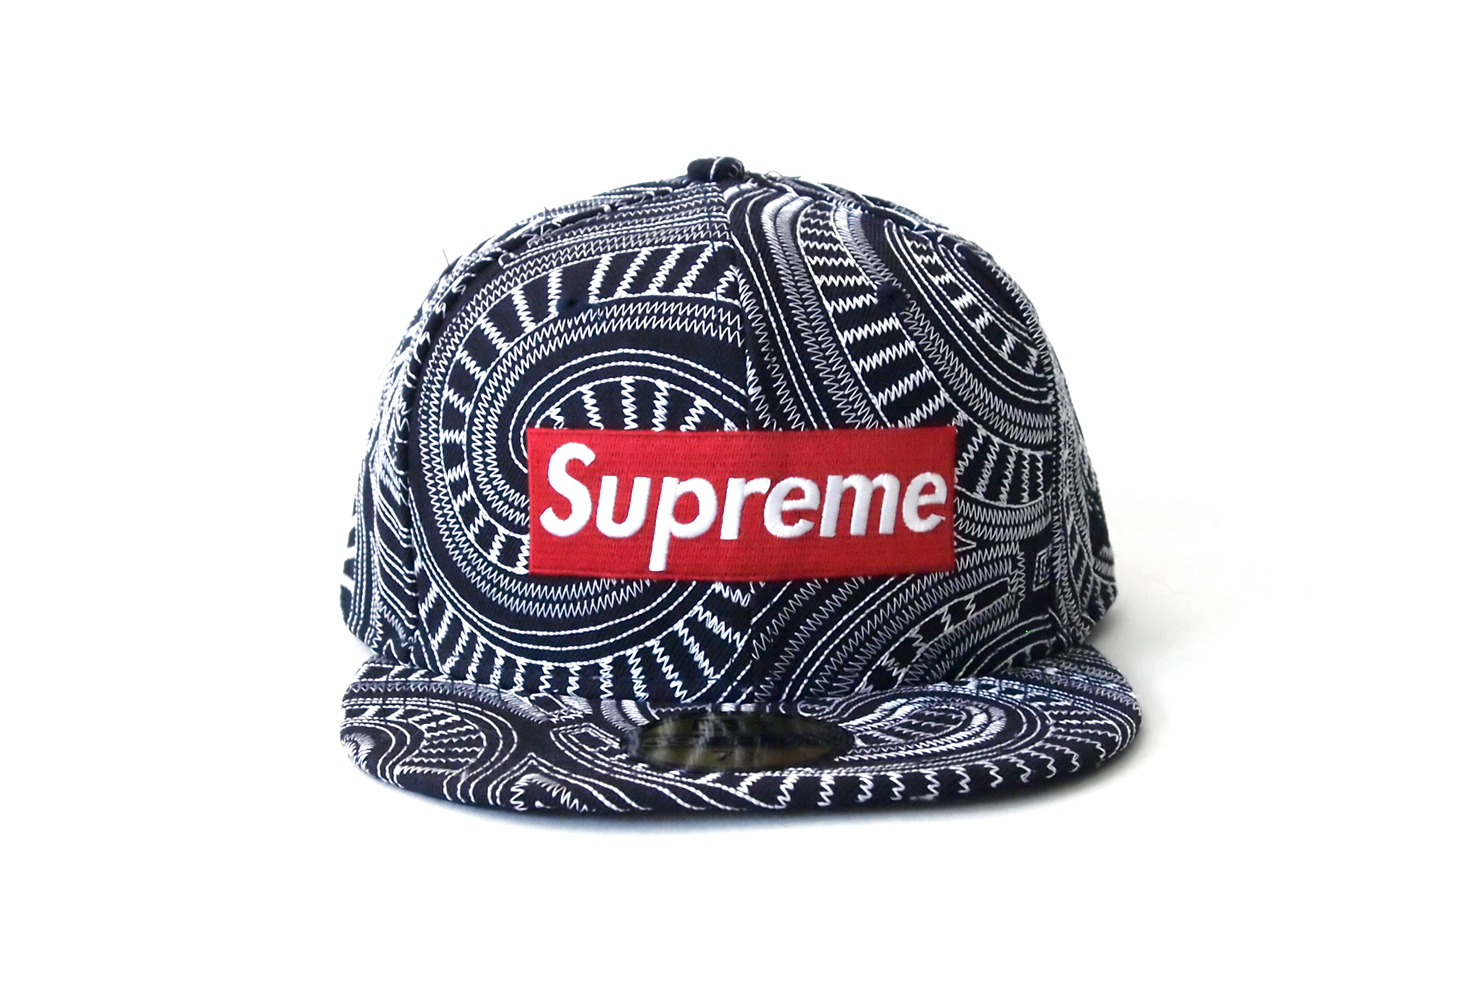 supreme/striped/logo/warm/up/pant